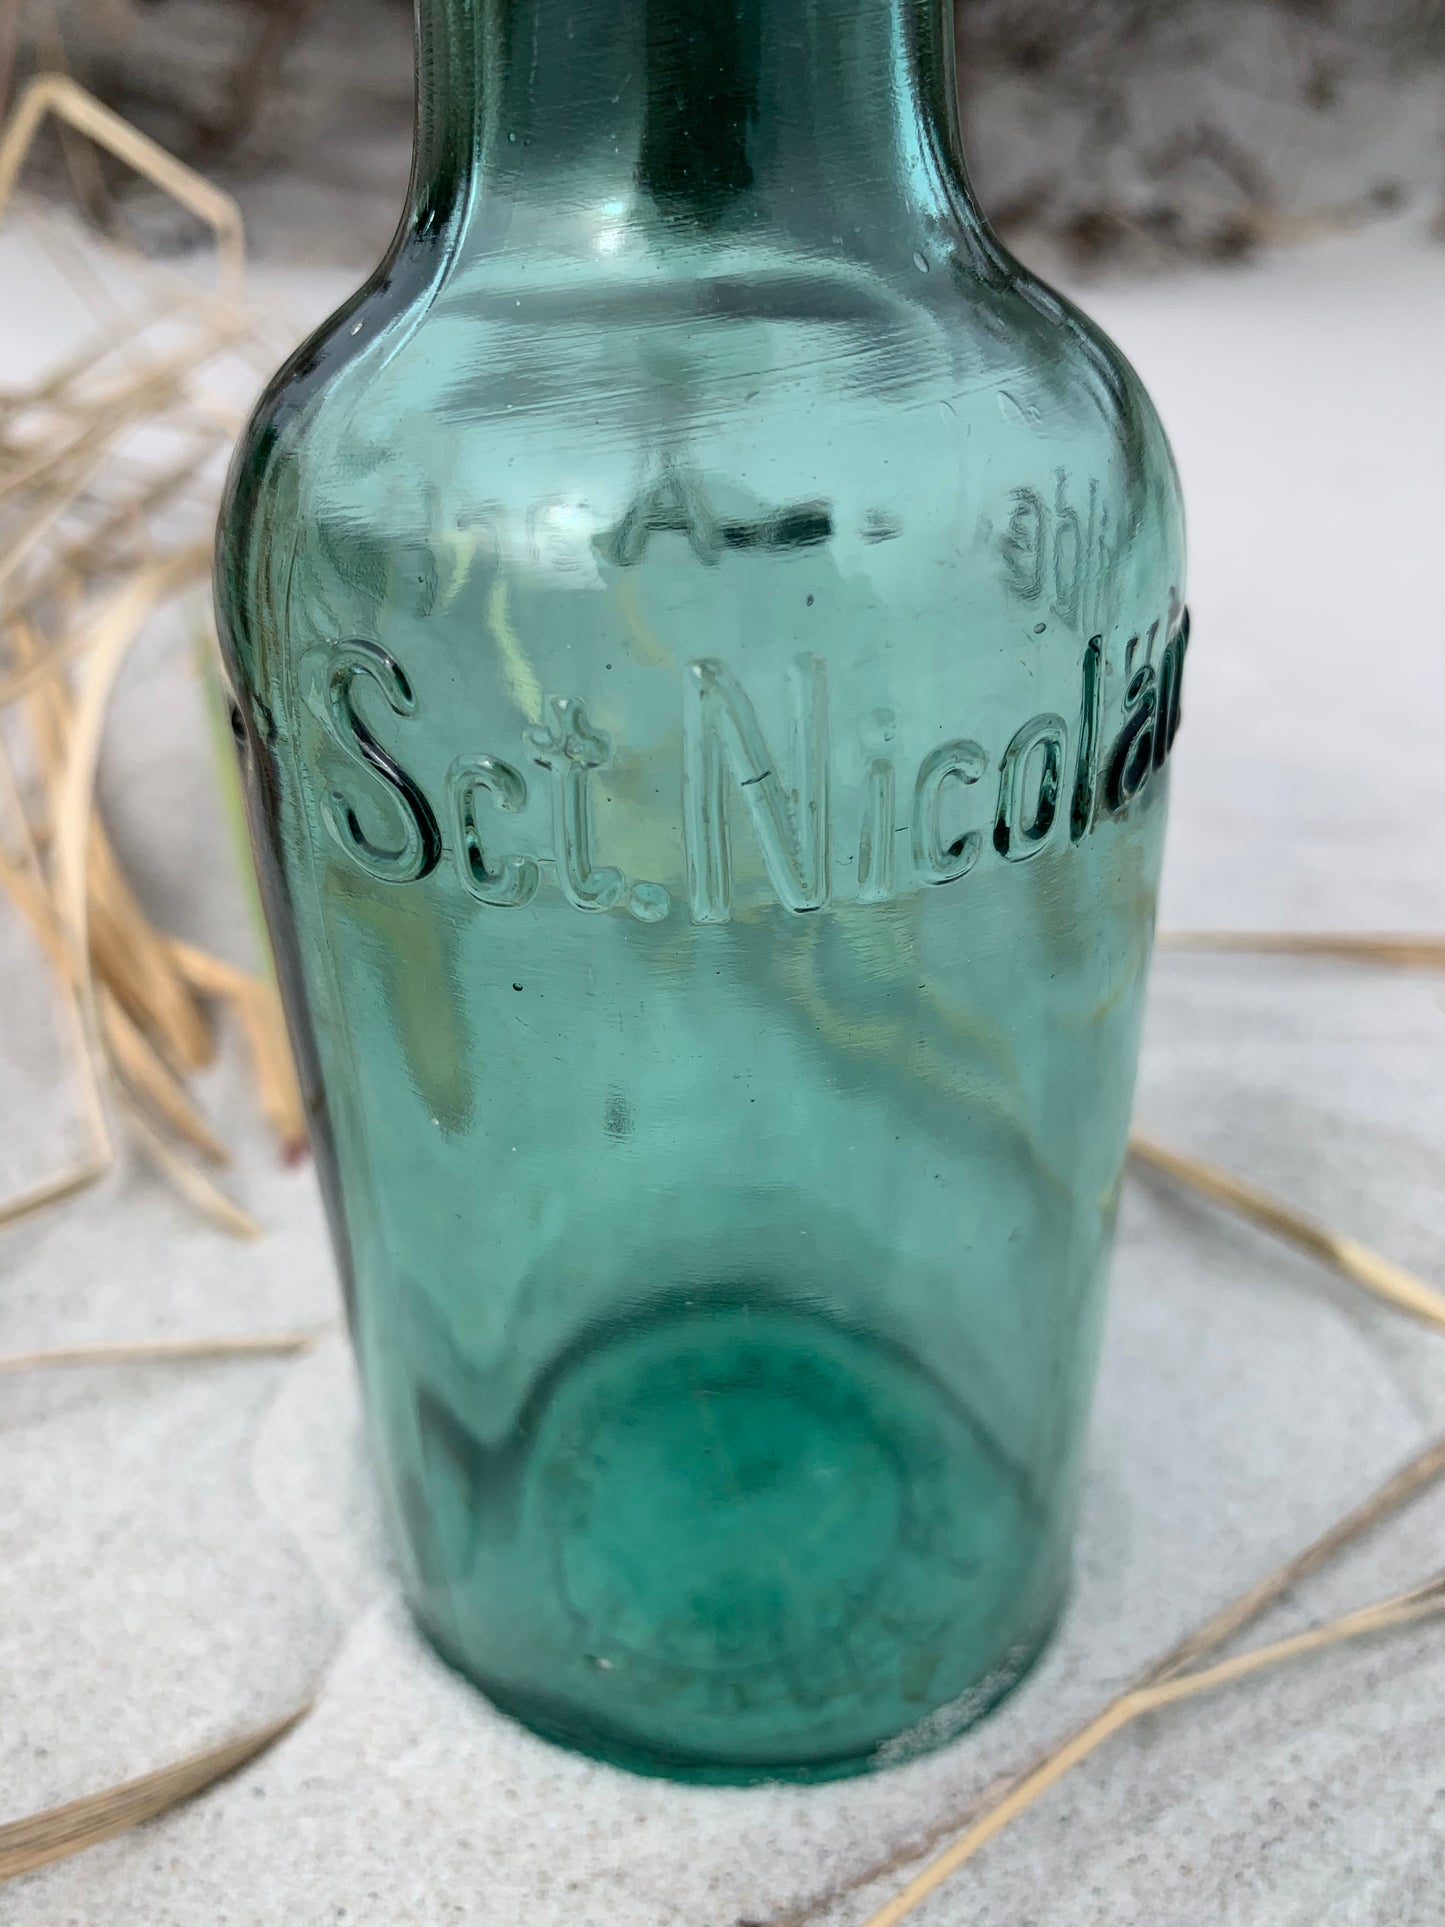 Skøn grøn patent flaske fra Sct. Nicolauskilde i Aarhus